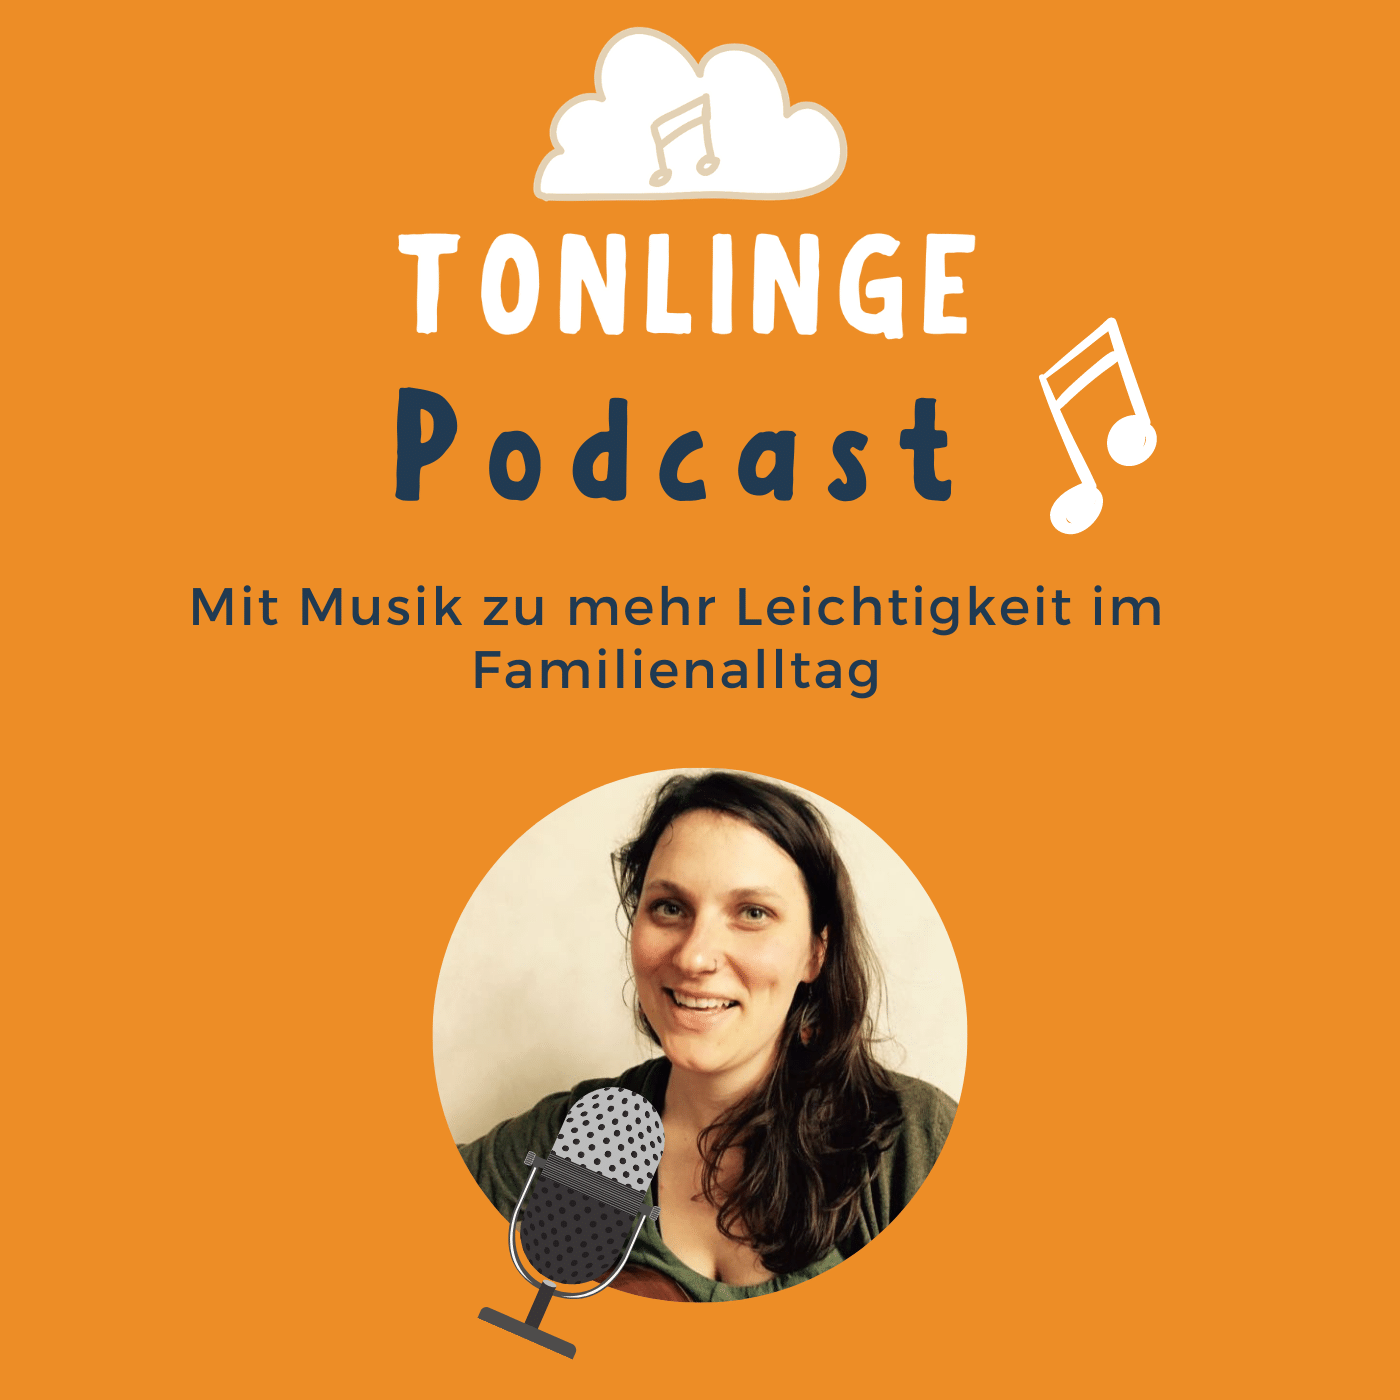 Der TONLINGE-Podcast – mit Musik zu mehr Leichtigkeit im Familienalltag